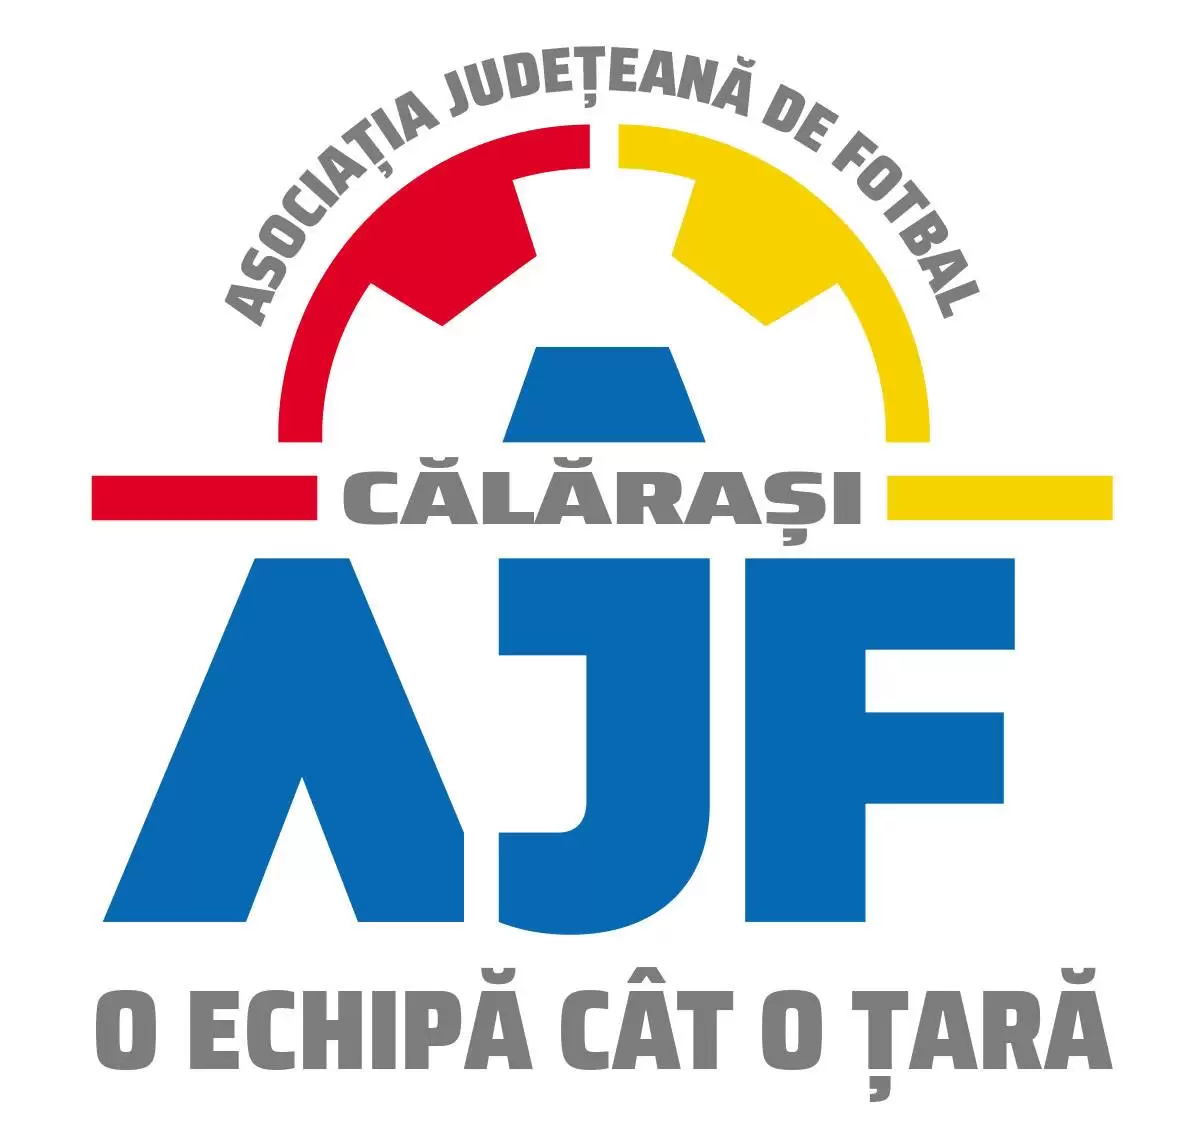 AJF Călărași | Ce a decis Comisia de Disciplină și Etică în ședința din 27 septembrie